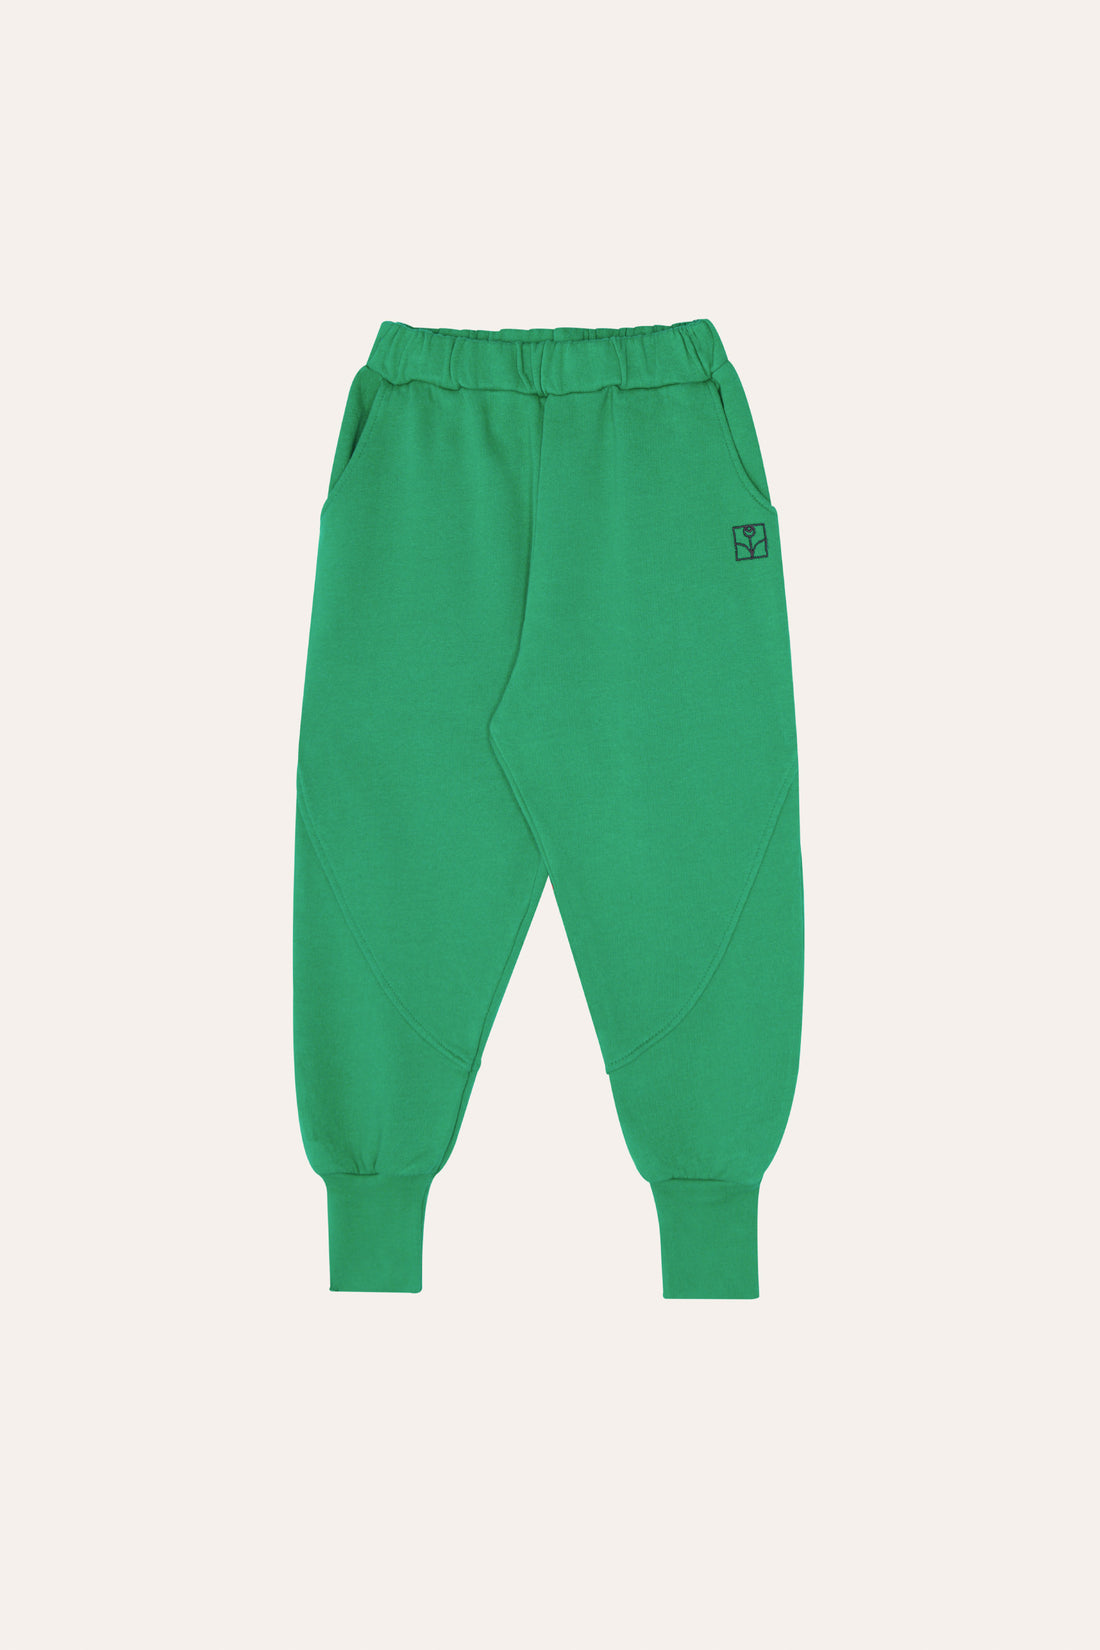 Green Kids Jogging Trousers - Parkette.